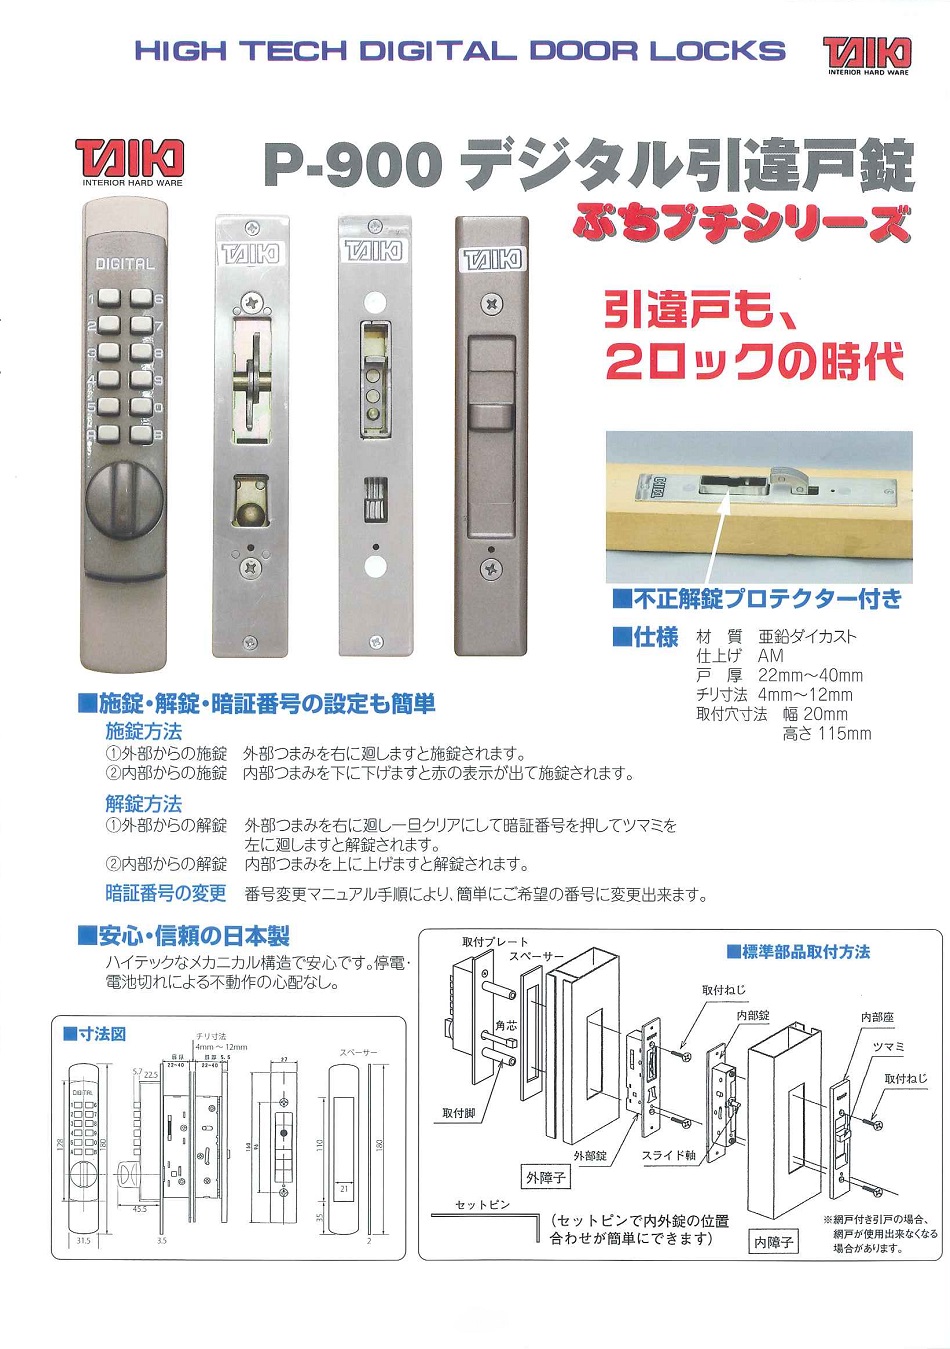 ぷちプチシリーズ P-900 デジタル引違戸錠